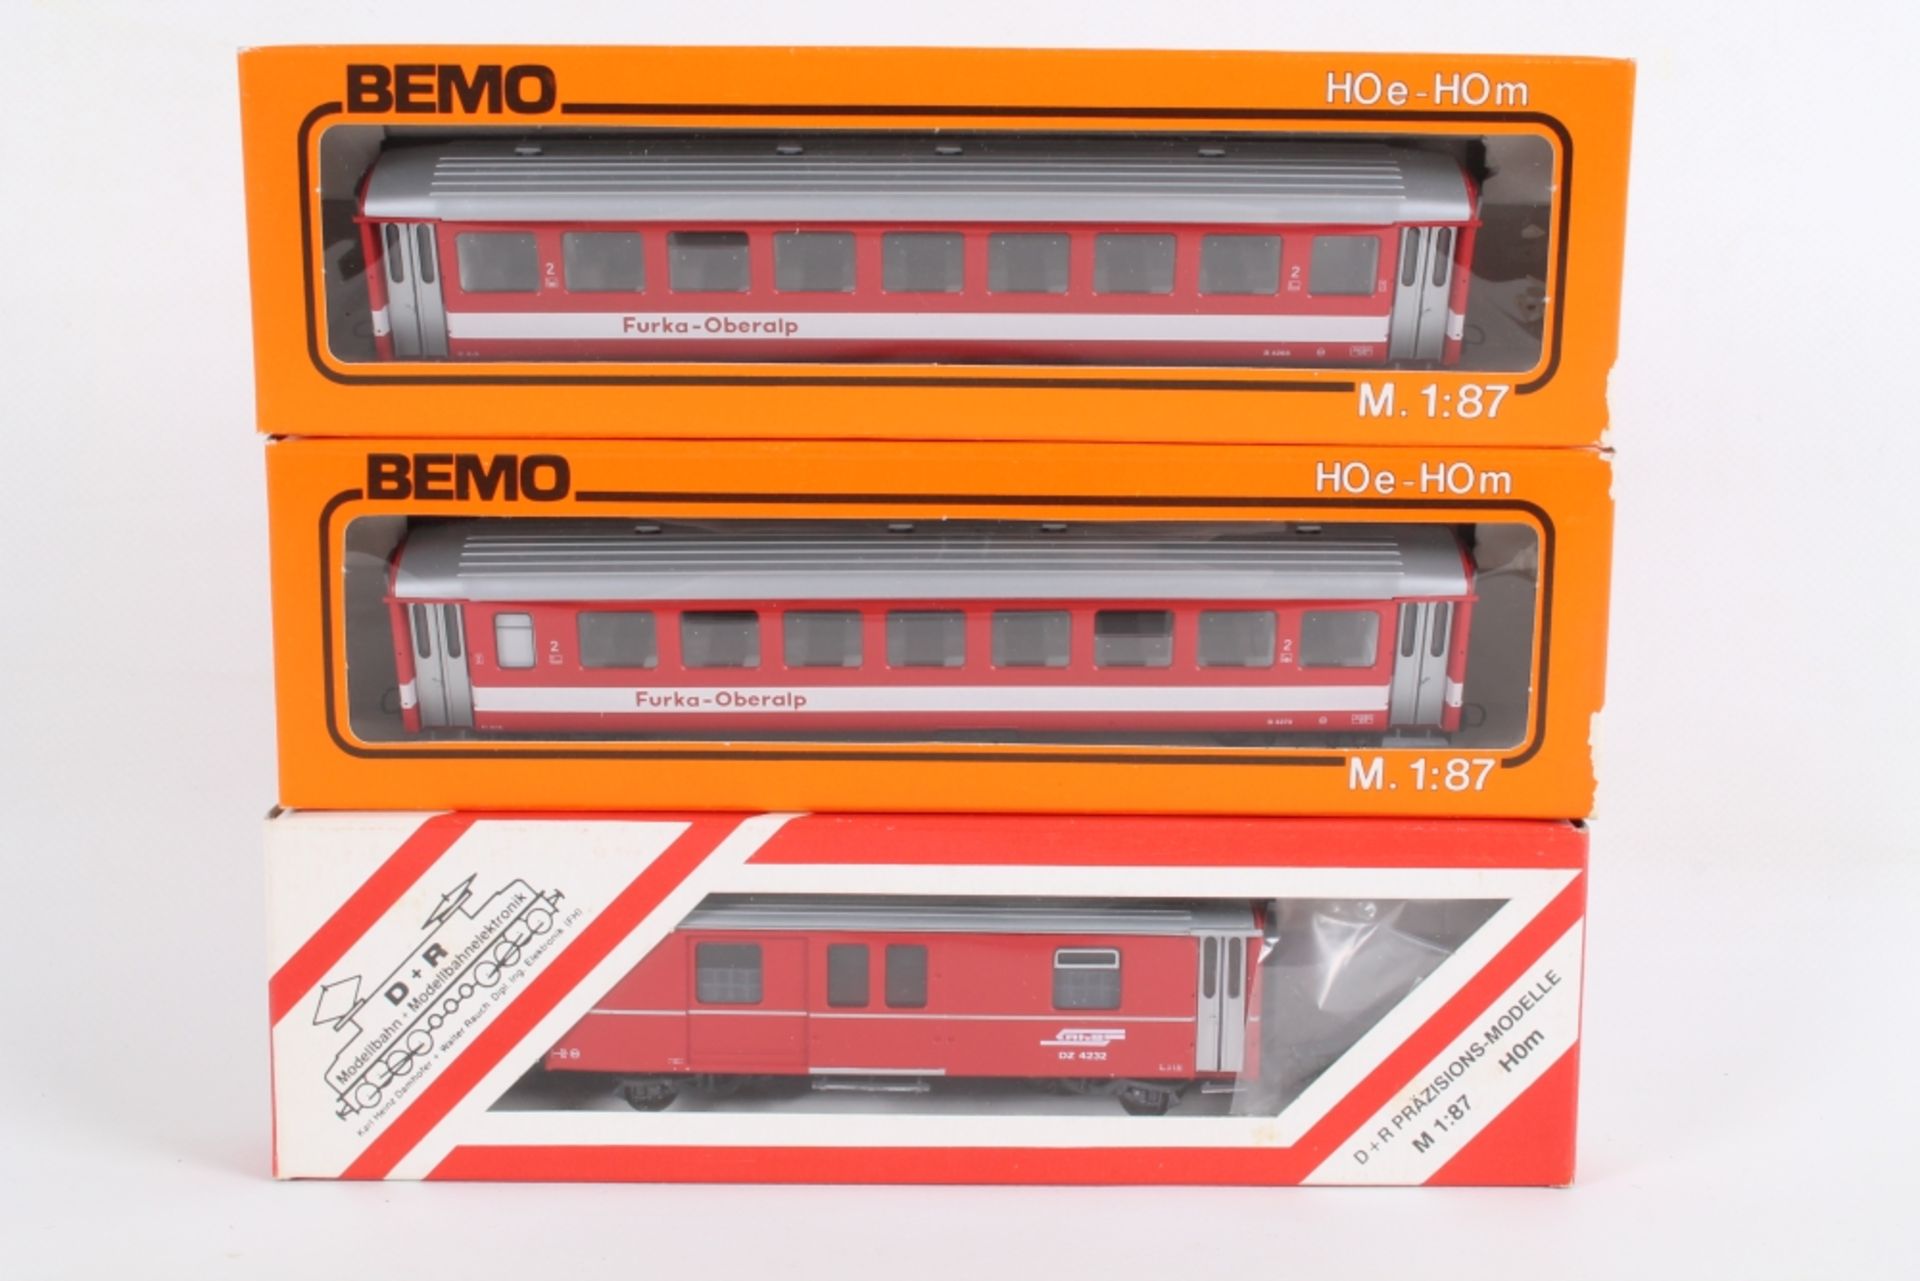 Bemo/D+R Modellbahn, drei Reisezugwagen - Image 2 of 2